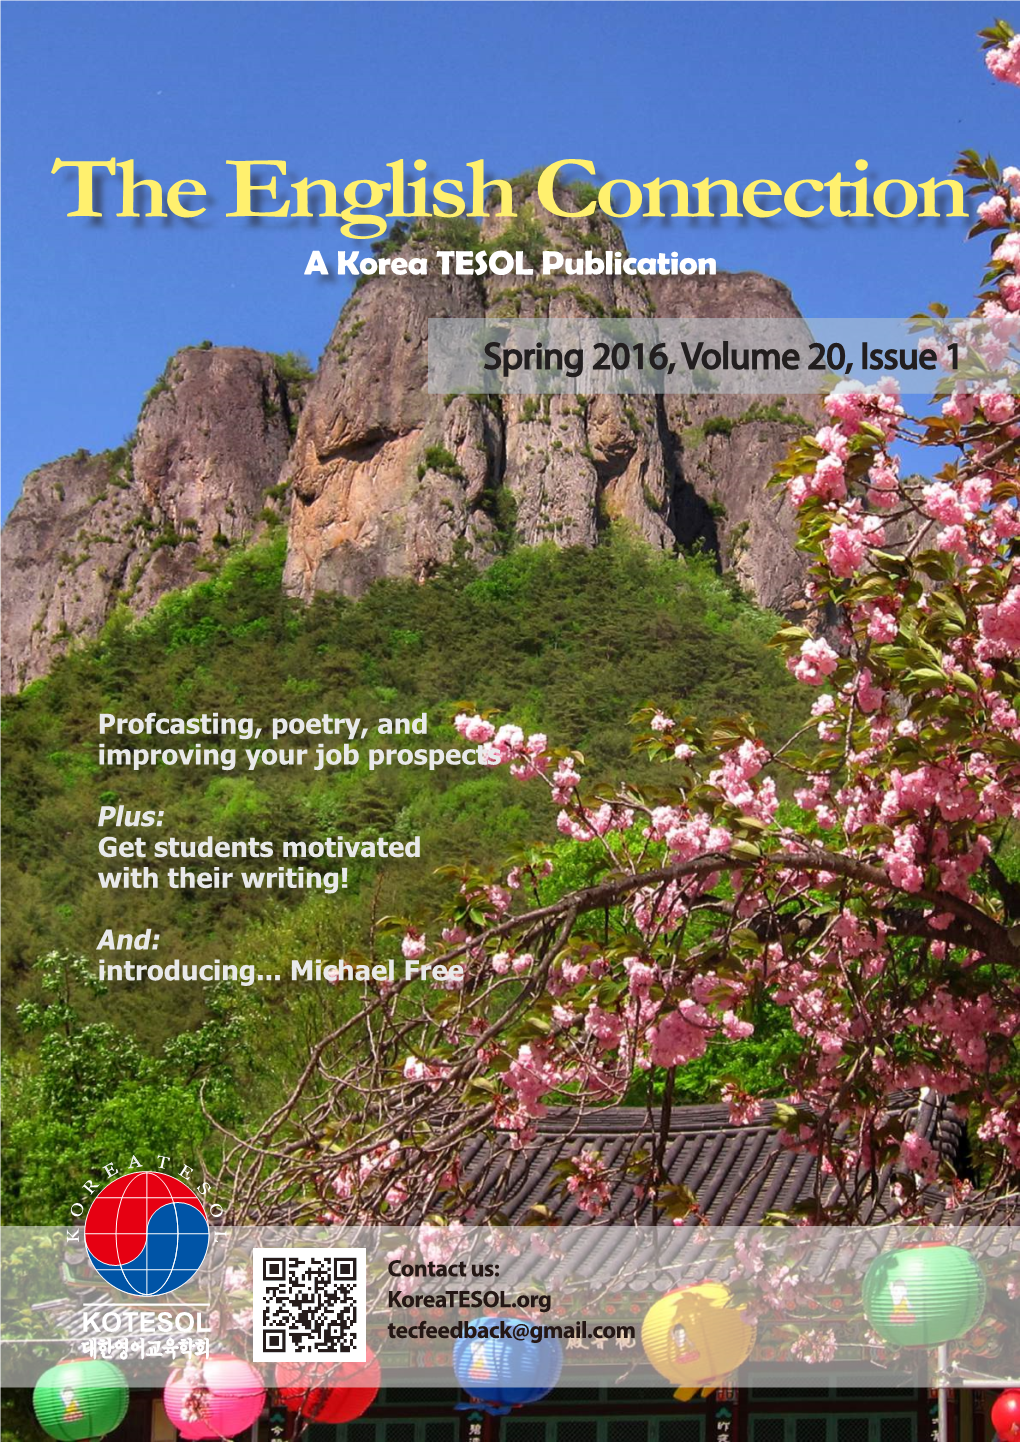 The English Connection a Korea TESOL Publication